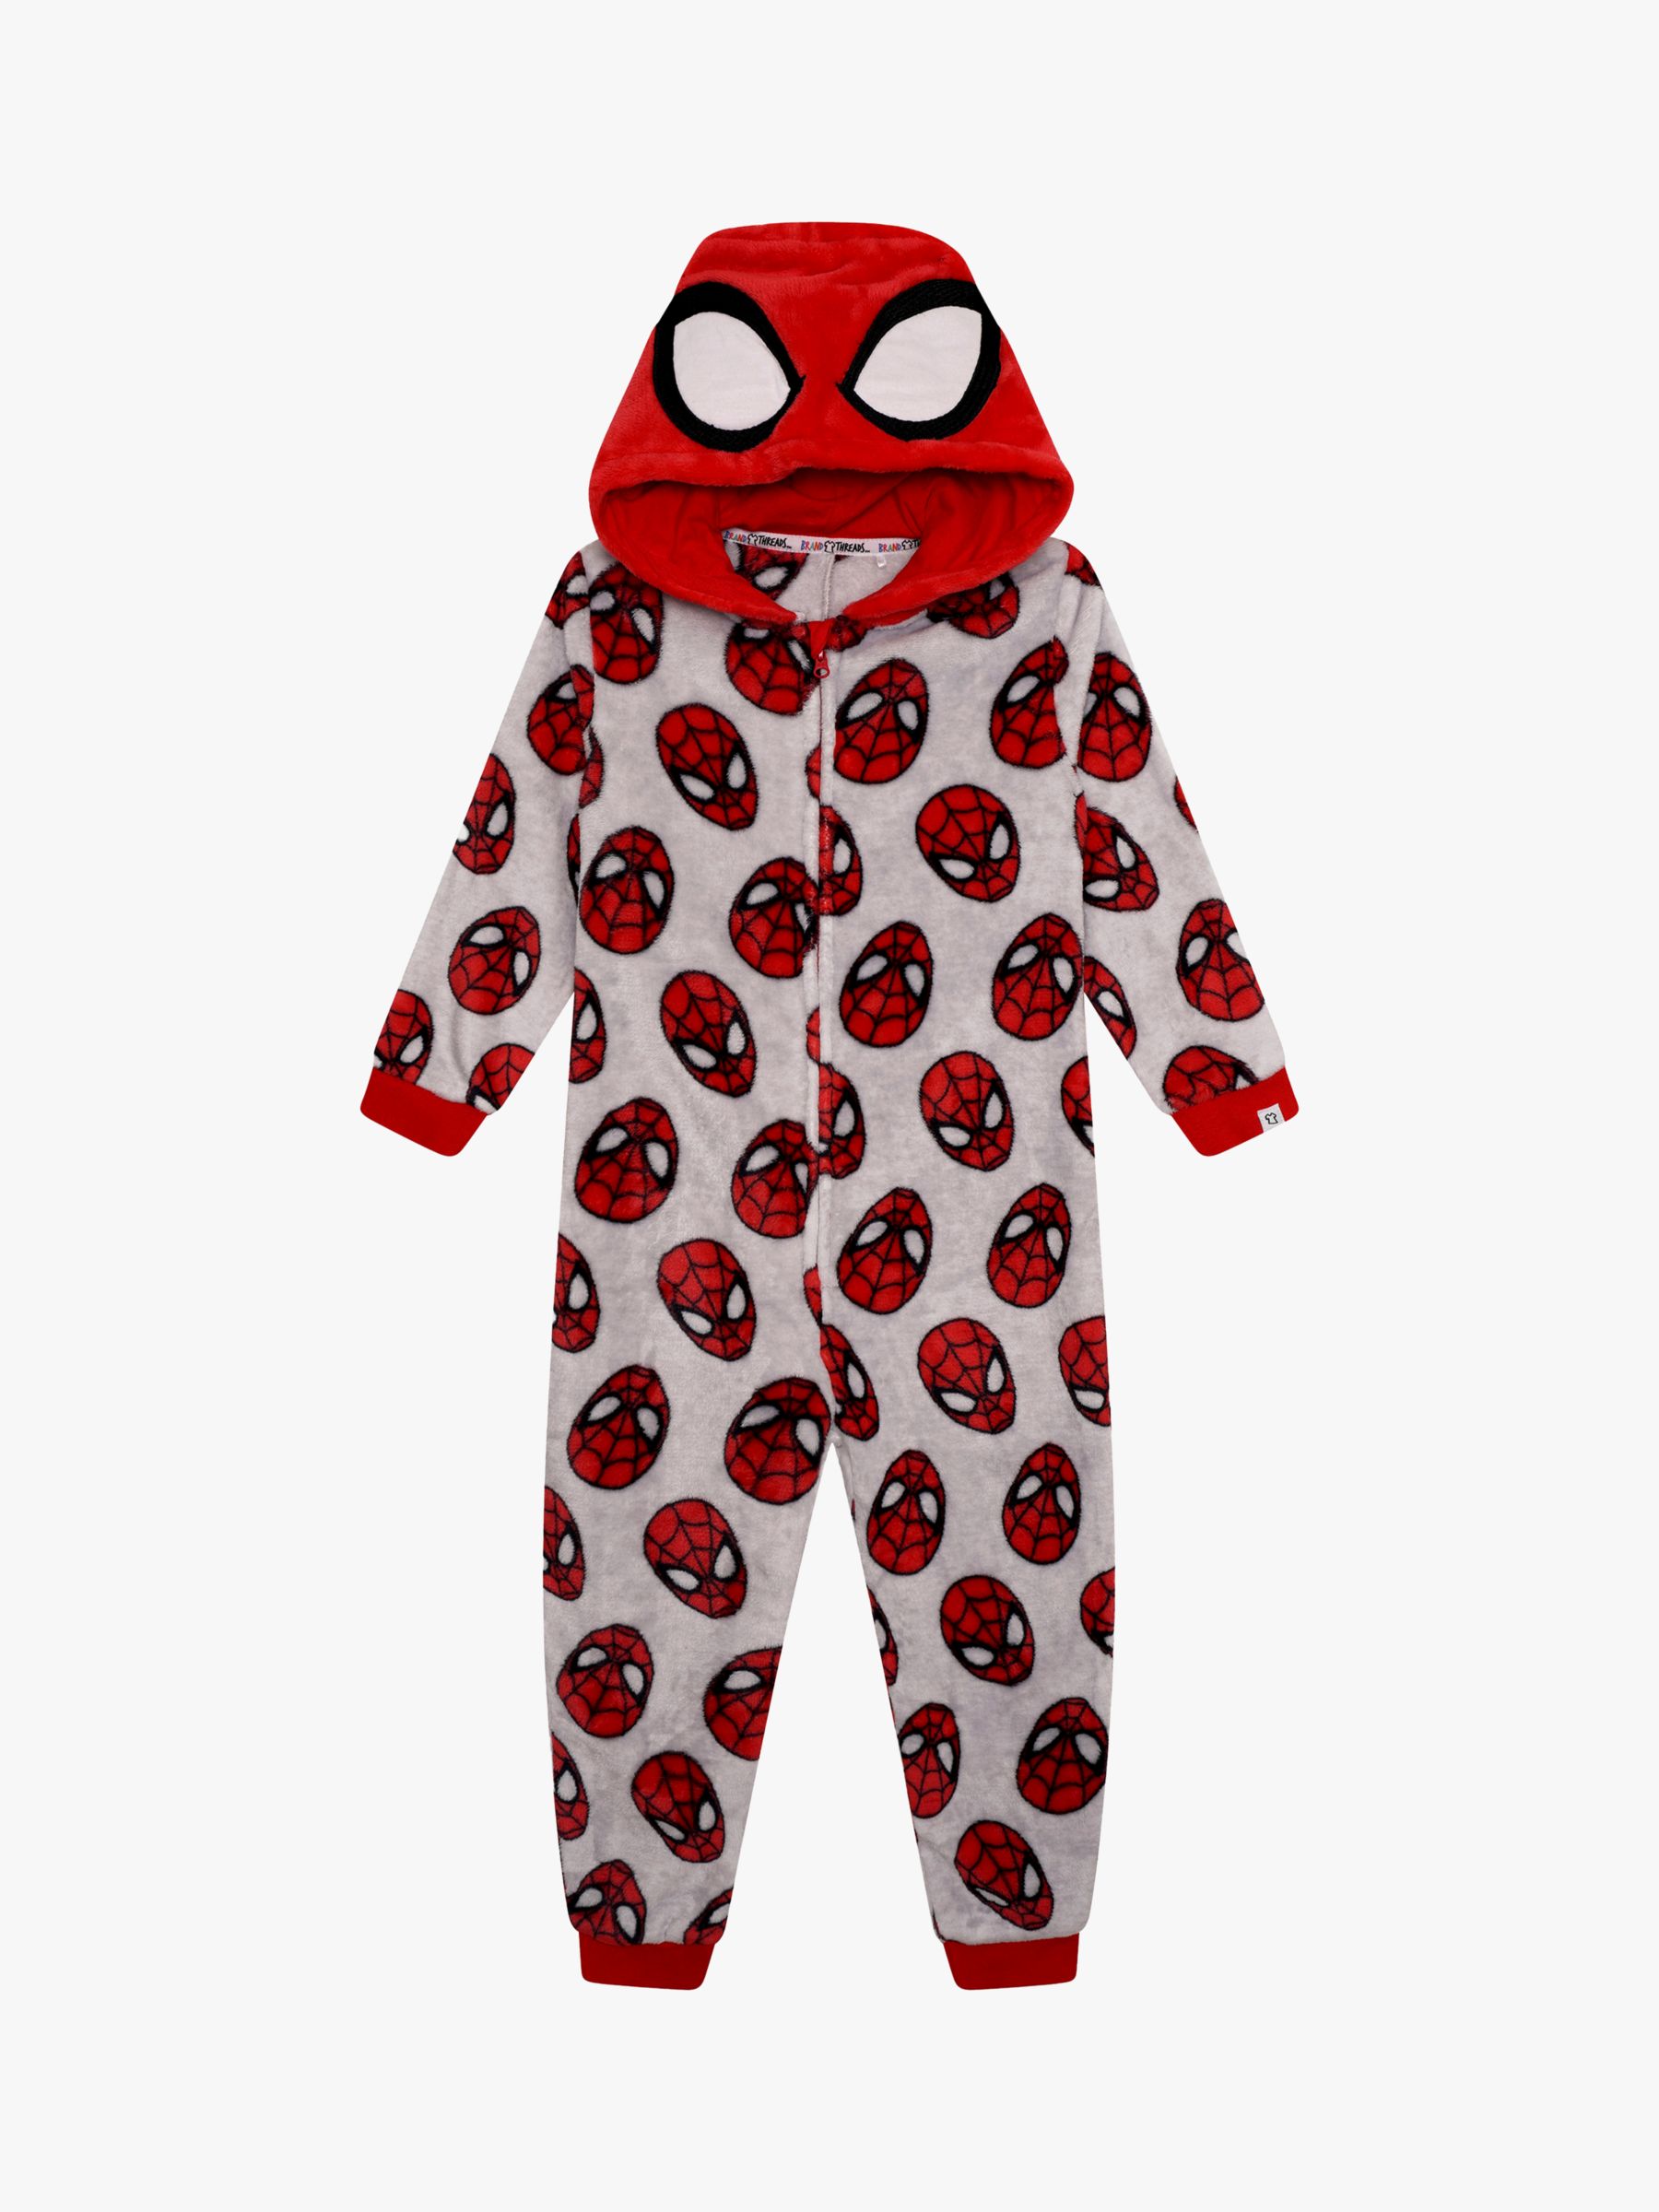 Buy Brand Threads Kids' Spiderman Onesie, Red/Grey Online at johnlewis.com